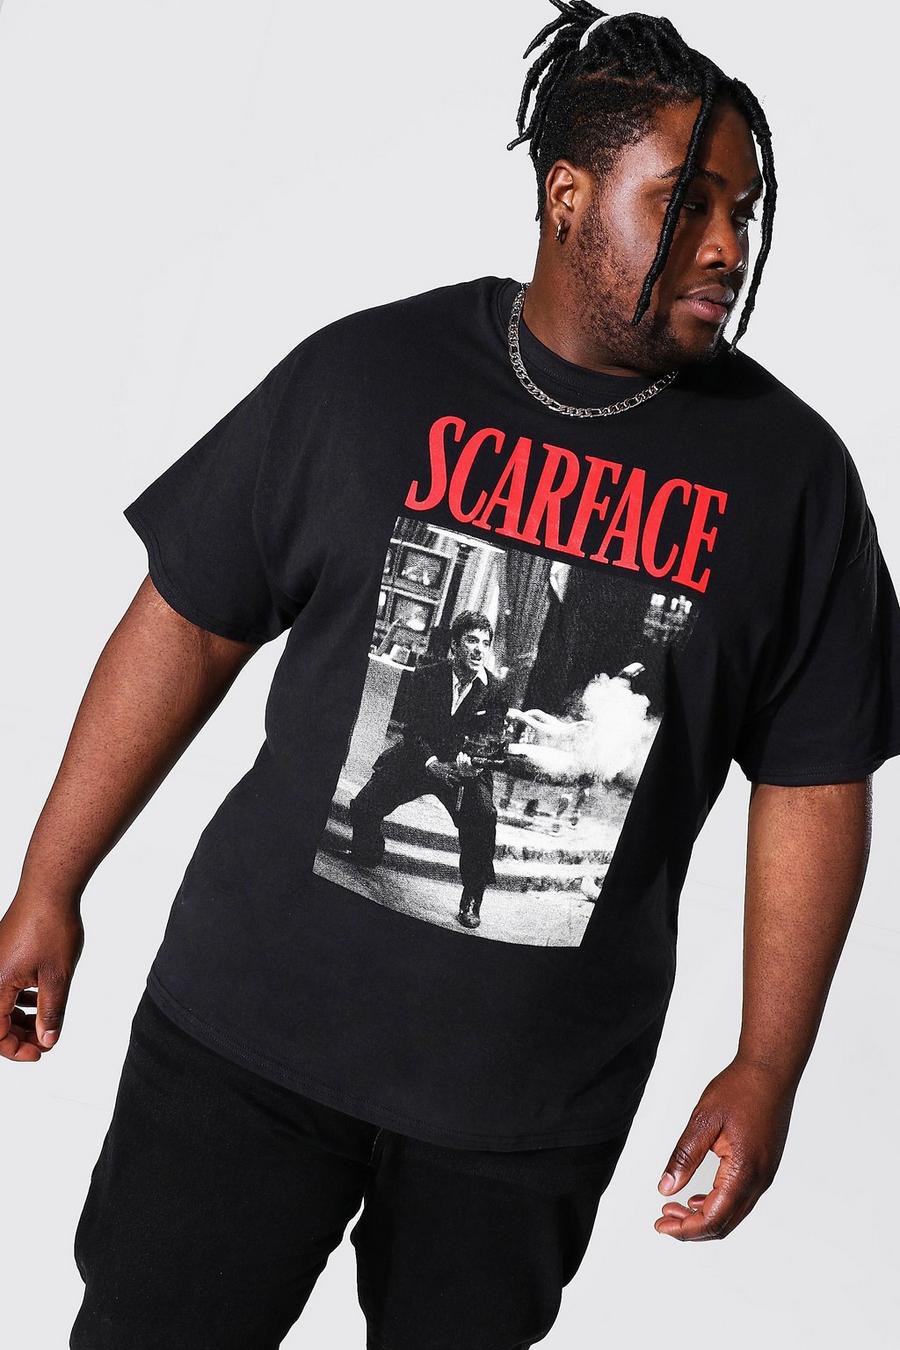 שחור black טישרט עם הדפס ממותג של Scarface למידות גדולות